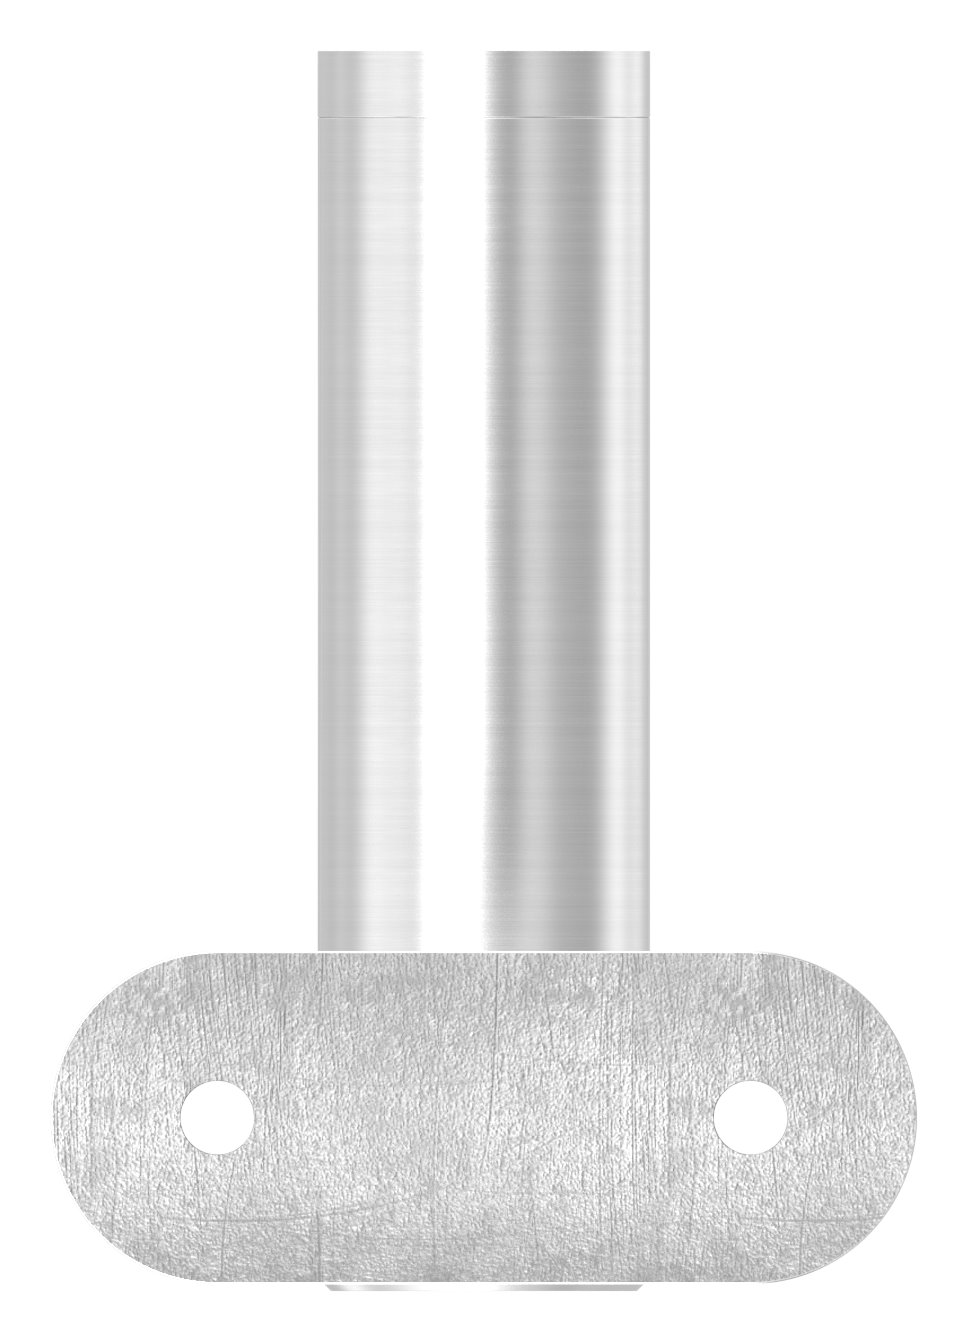 Handlaufhalter mit Gelenk, Handlaufanschlussplatte 42,4mm, V2A